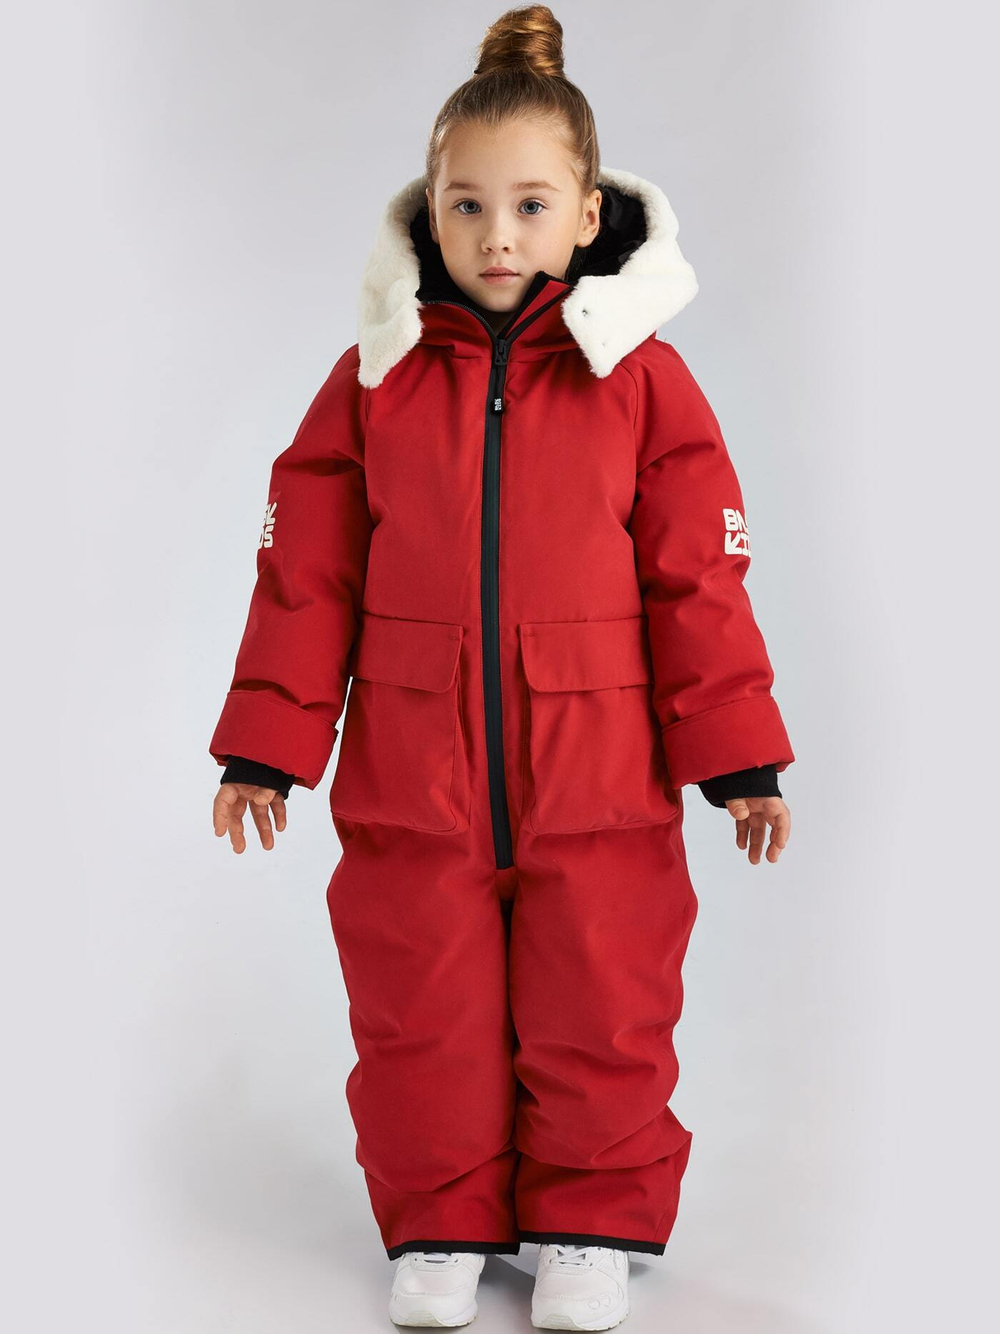 BASK Зимний комбинезон для детей от 2 до 8 лет пуховый BASK kids CLOUD V2 -35°C красный